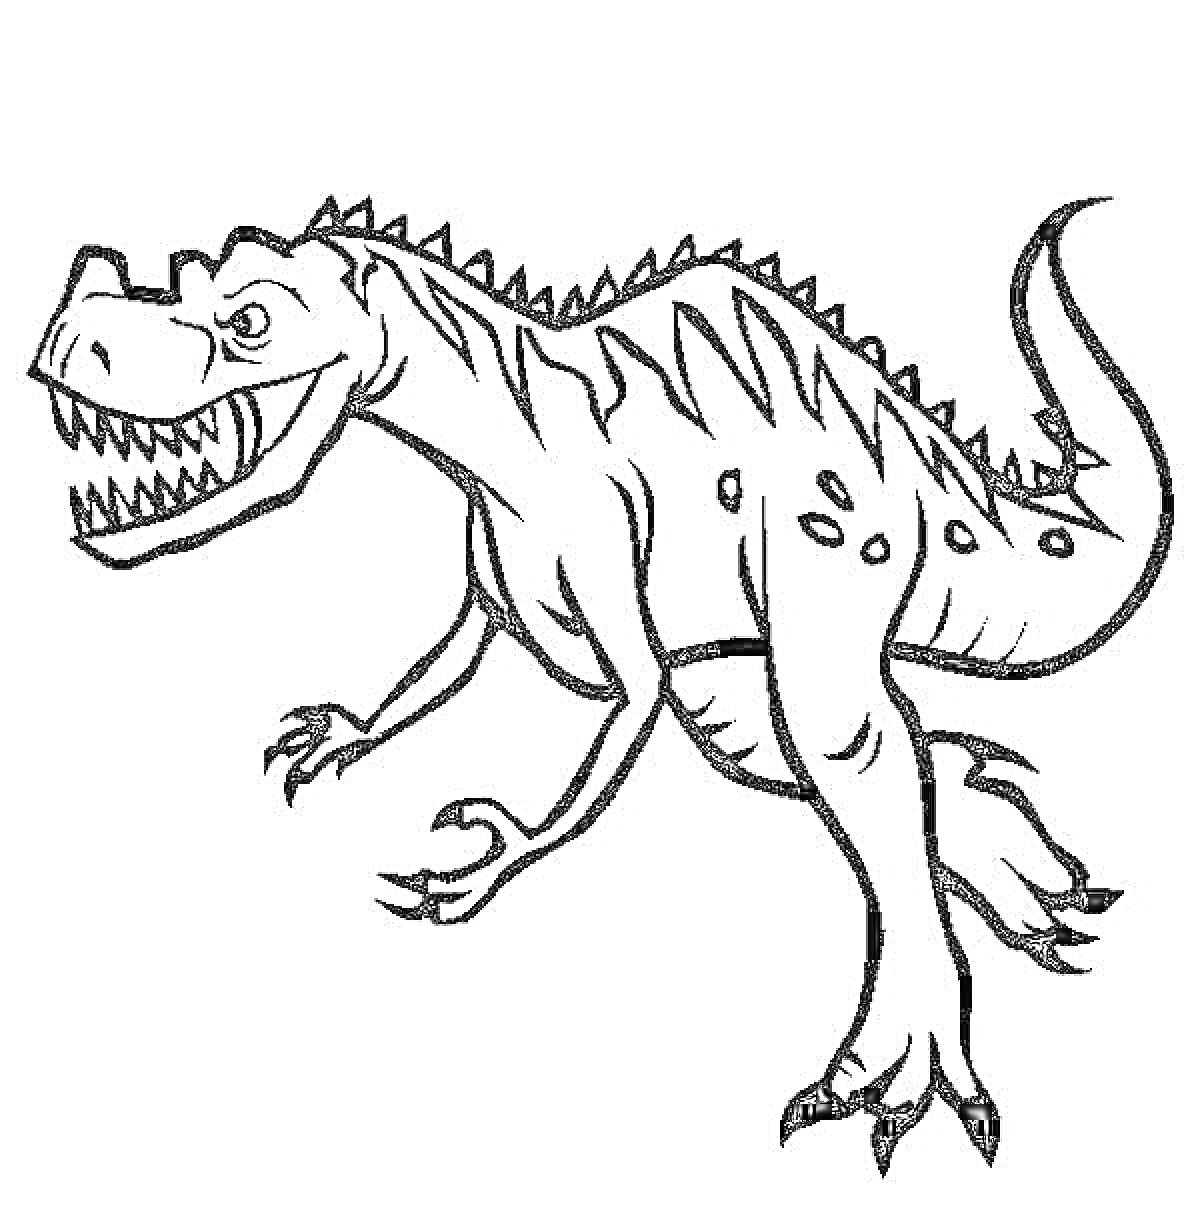 динозавр тирекс с гребнем и пятнами на теле, бегущий, с открытой пастью и острыми зубами